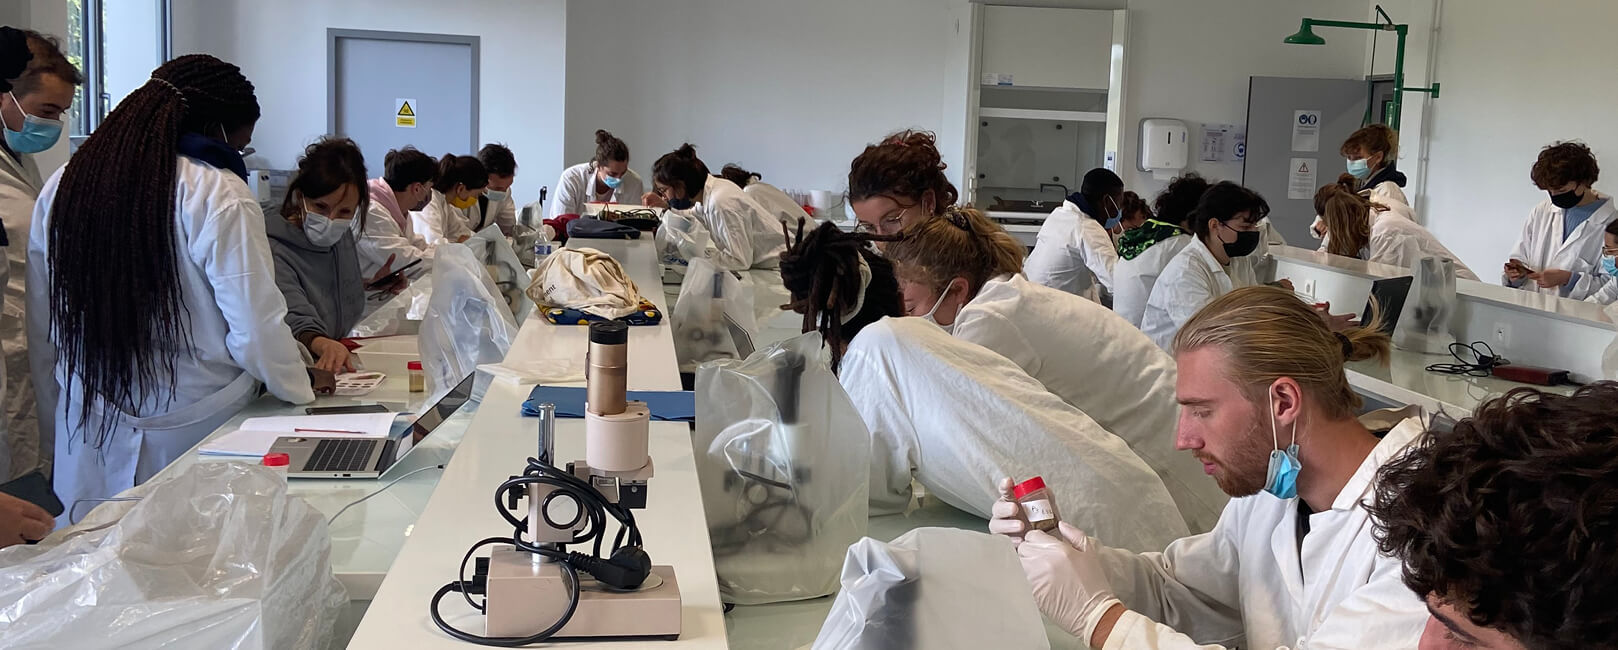 Etudiants en blouses dans un laboratoire en train d'observer au microscope leur échantillon afin de réaliser un diagnostic agronomique.